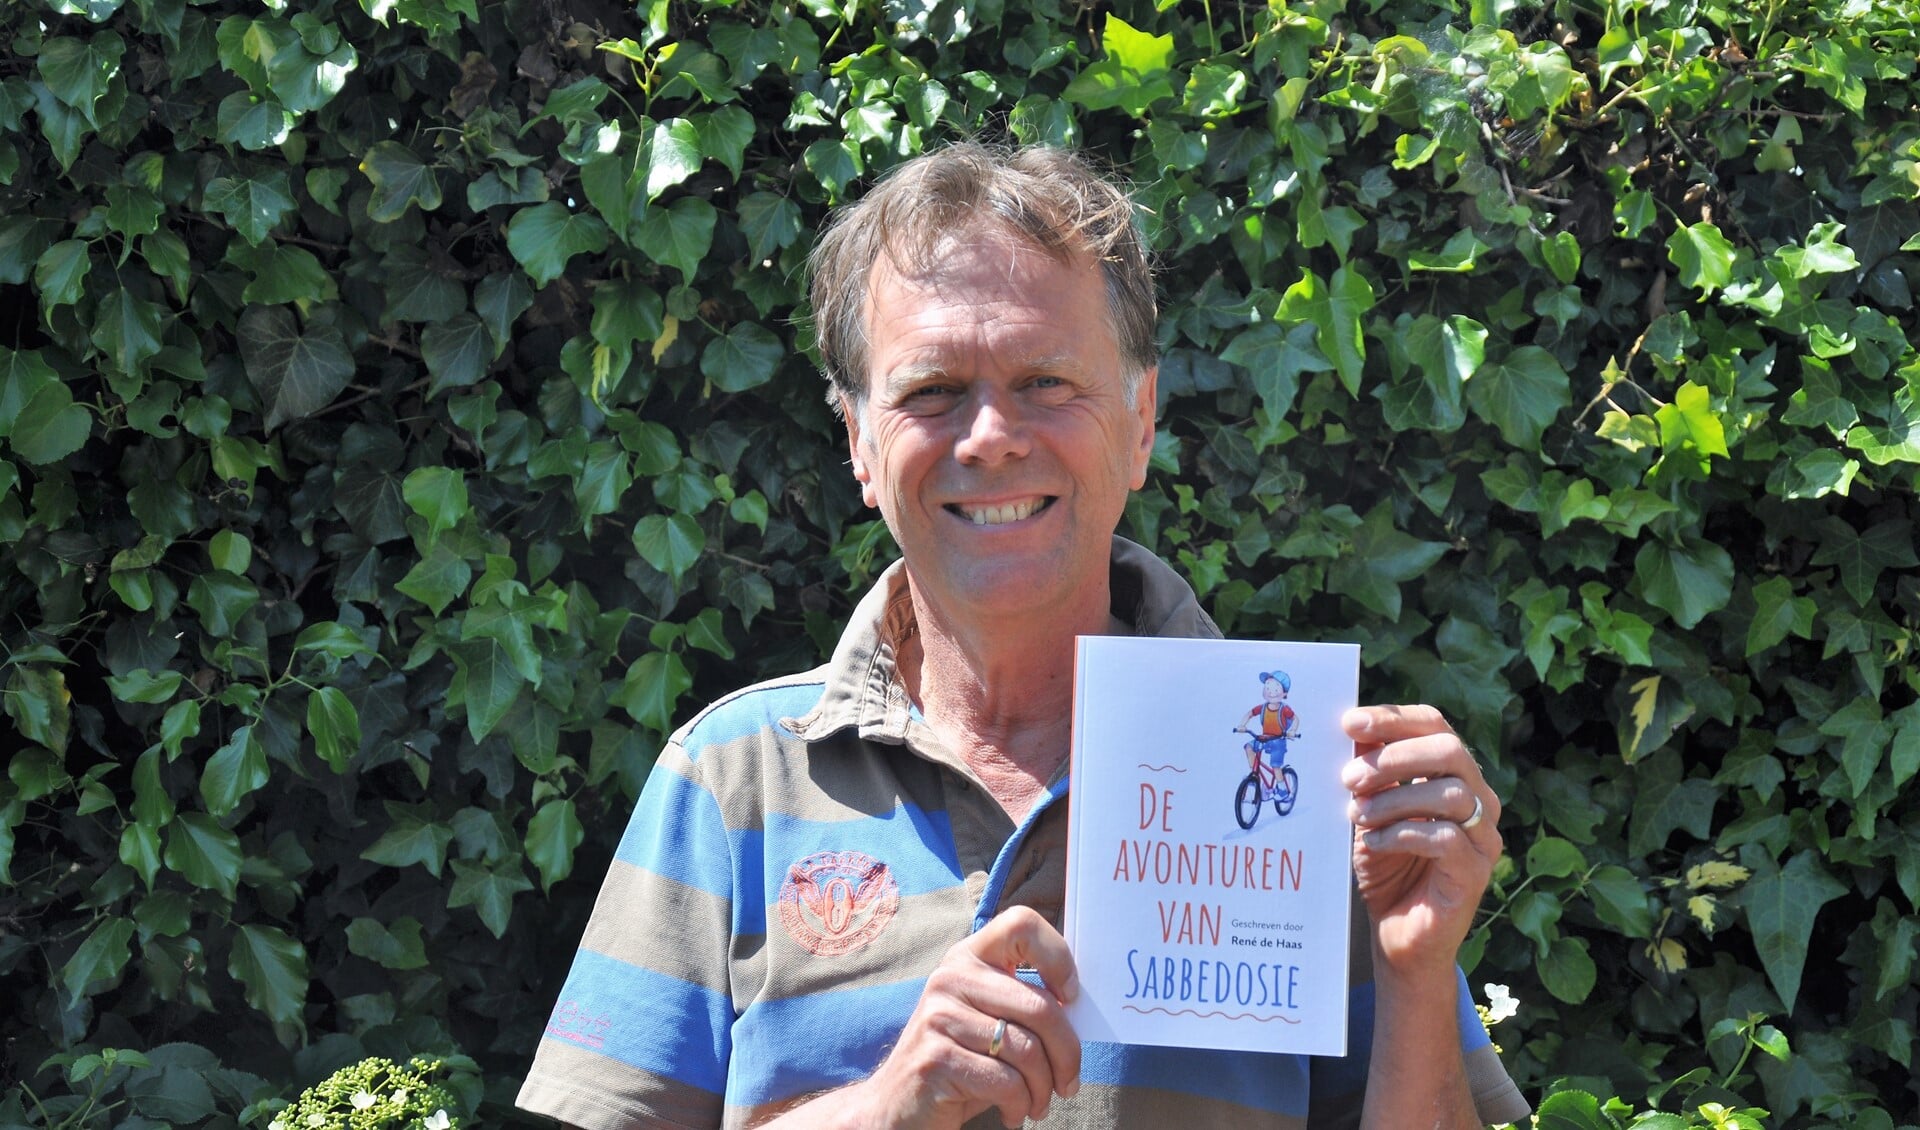 René de Haas uit Voorburg met zijn nieuwe boek 'De verhalen van Sabbedosie - Onverwachte avonturen van zomaar een jongetje'.